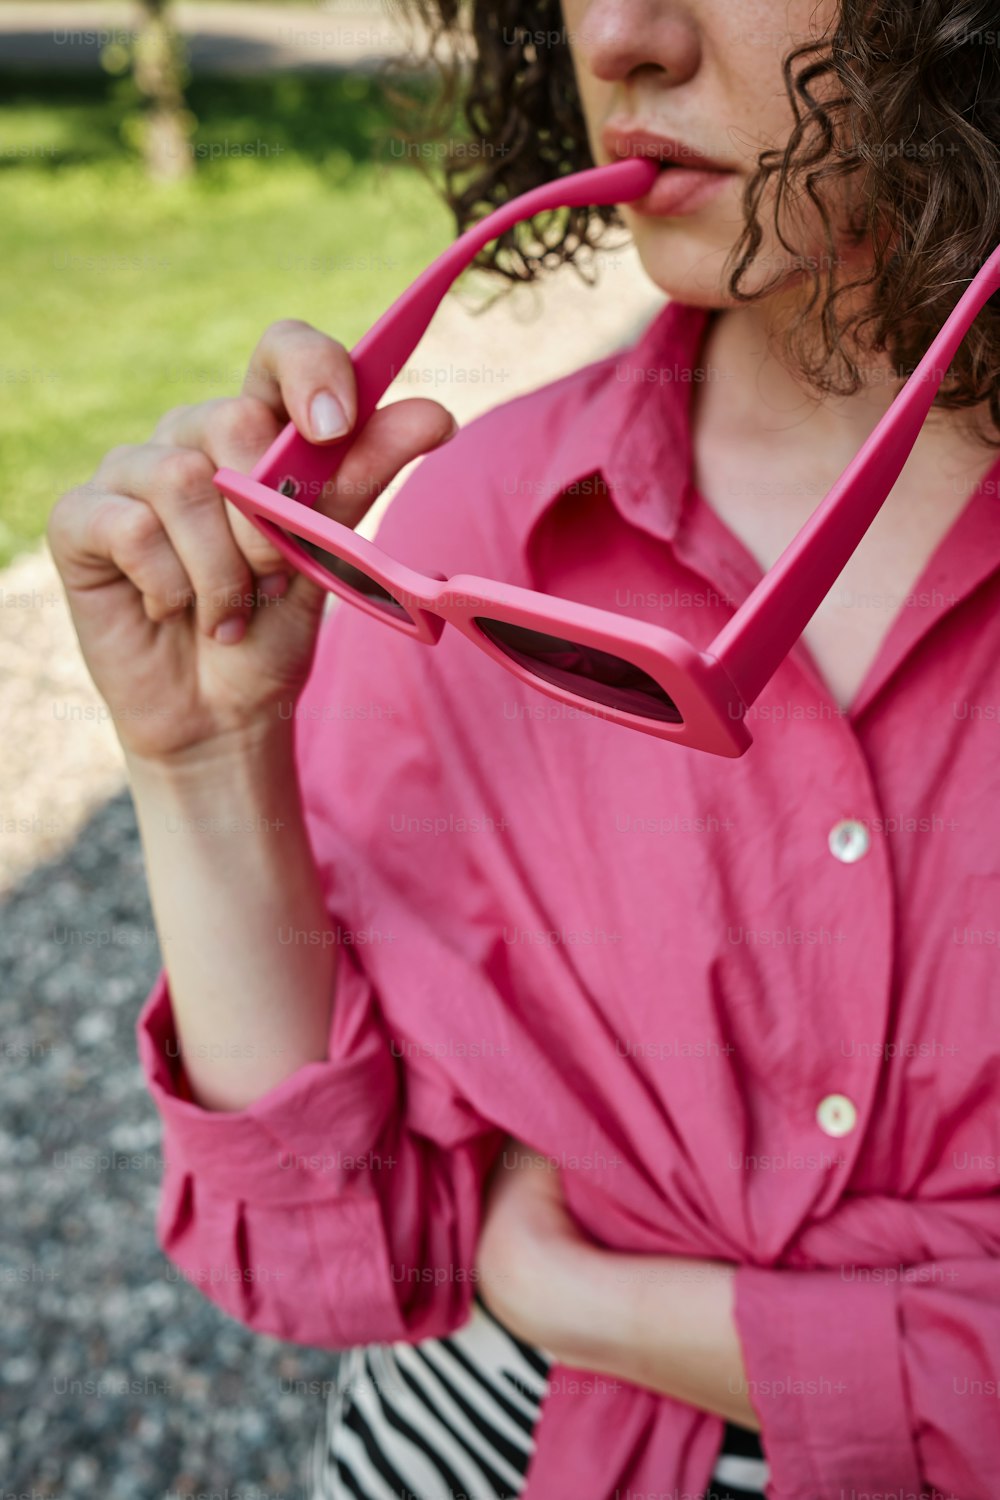 Une femme en chemise rose tient une paire de lunettes roses